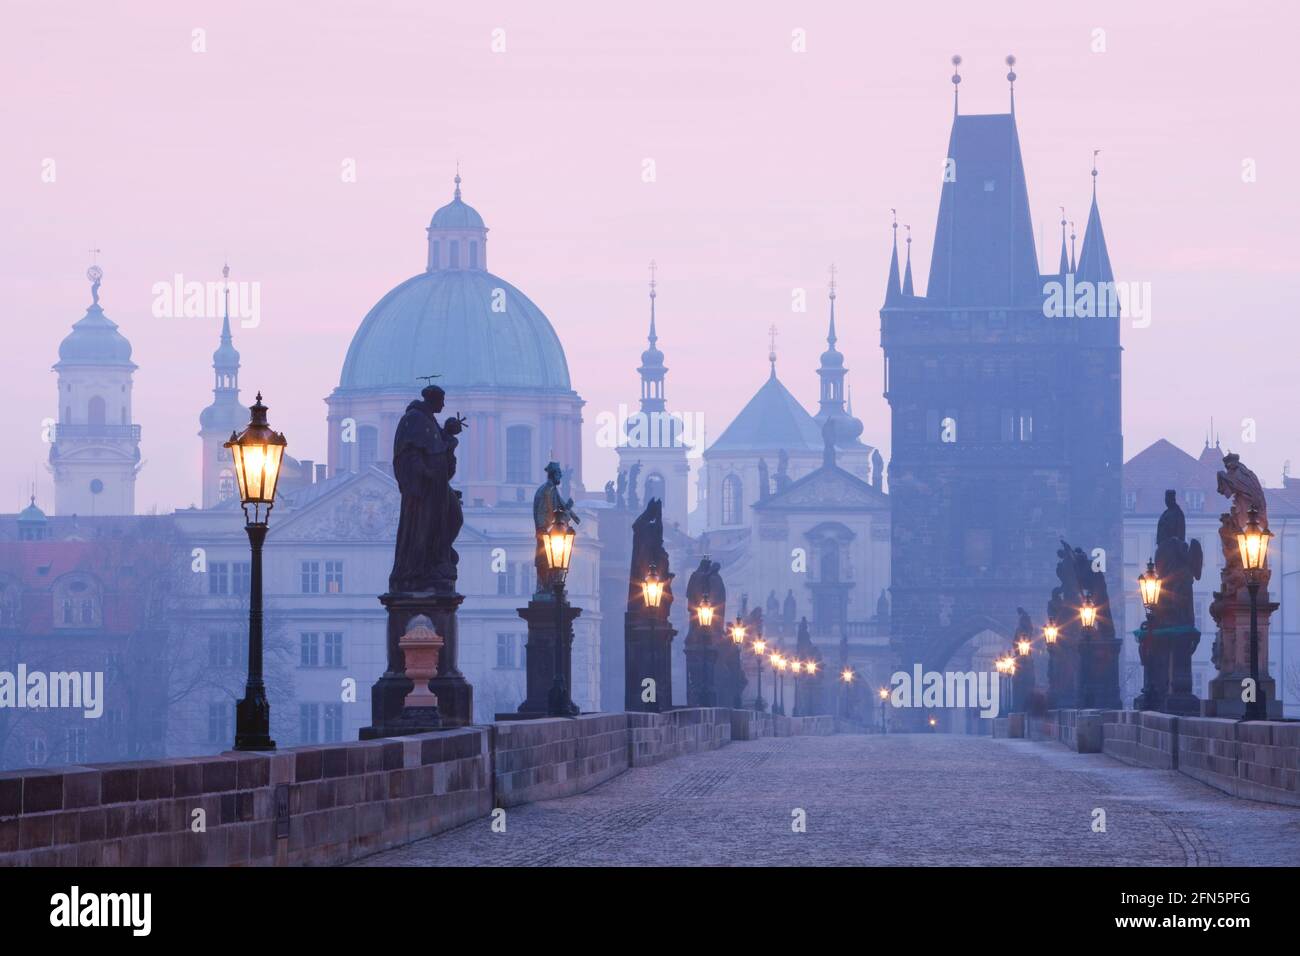 Praga, Czechia - Ponte Carlo e guglie della città vecchia all'alba. Foto Stock